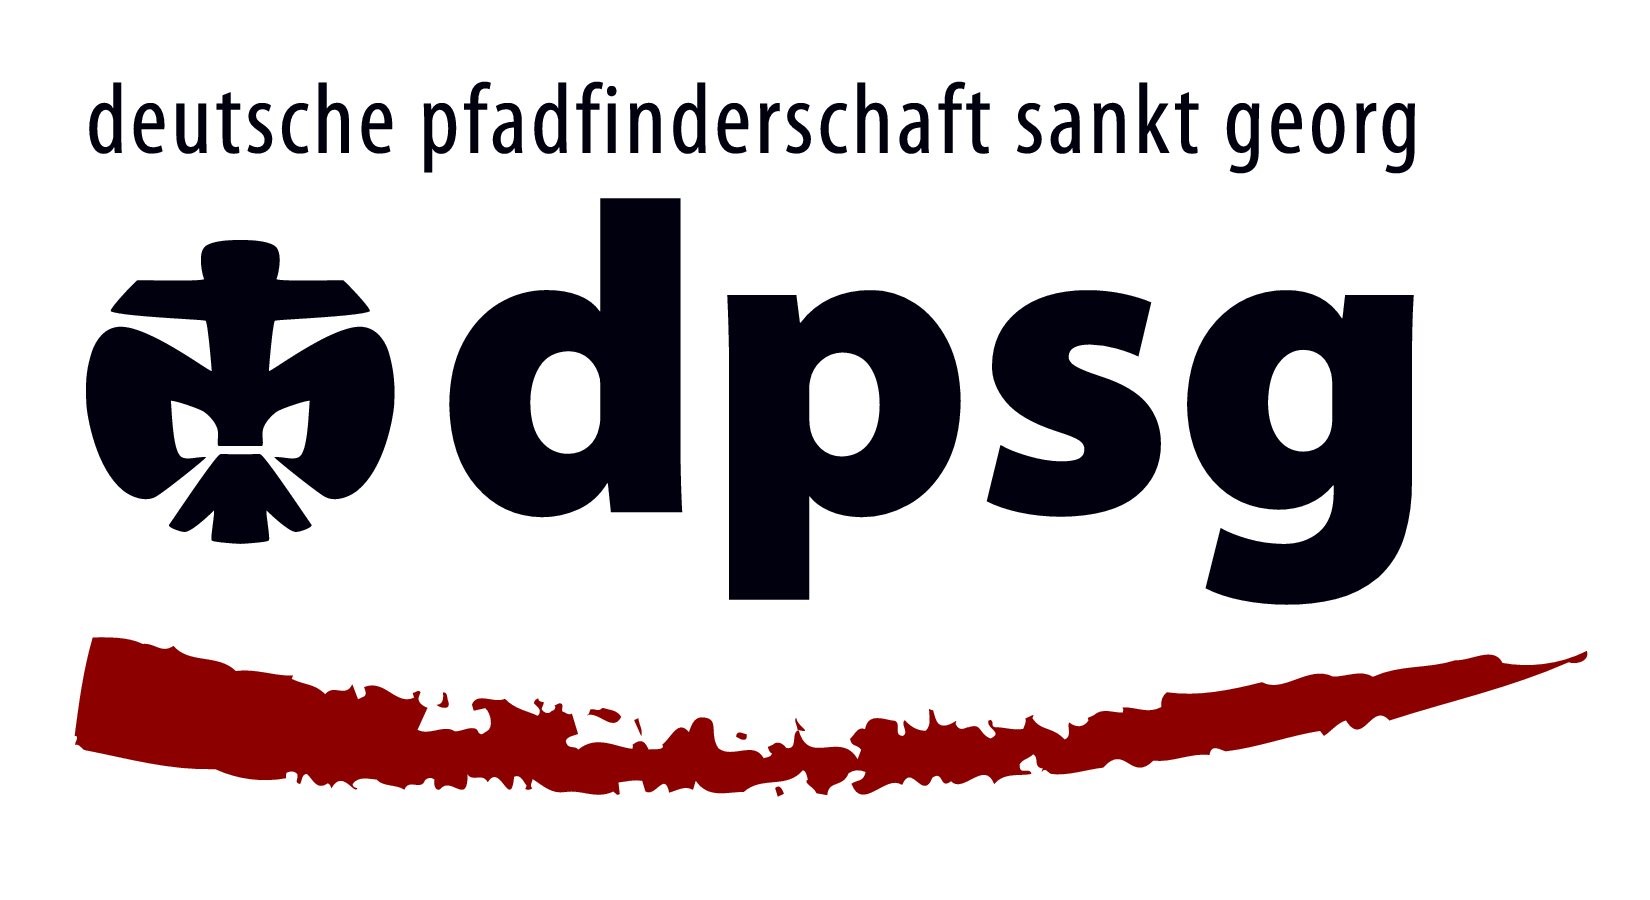 DPSG Dortmund